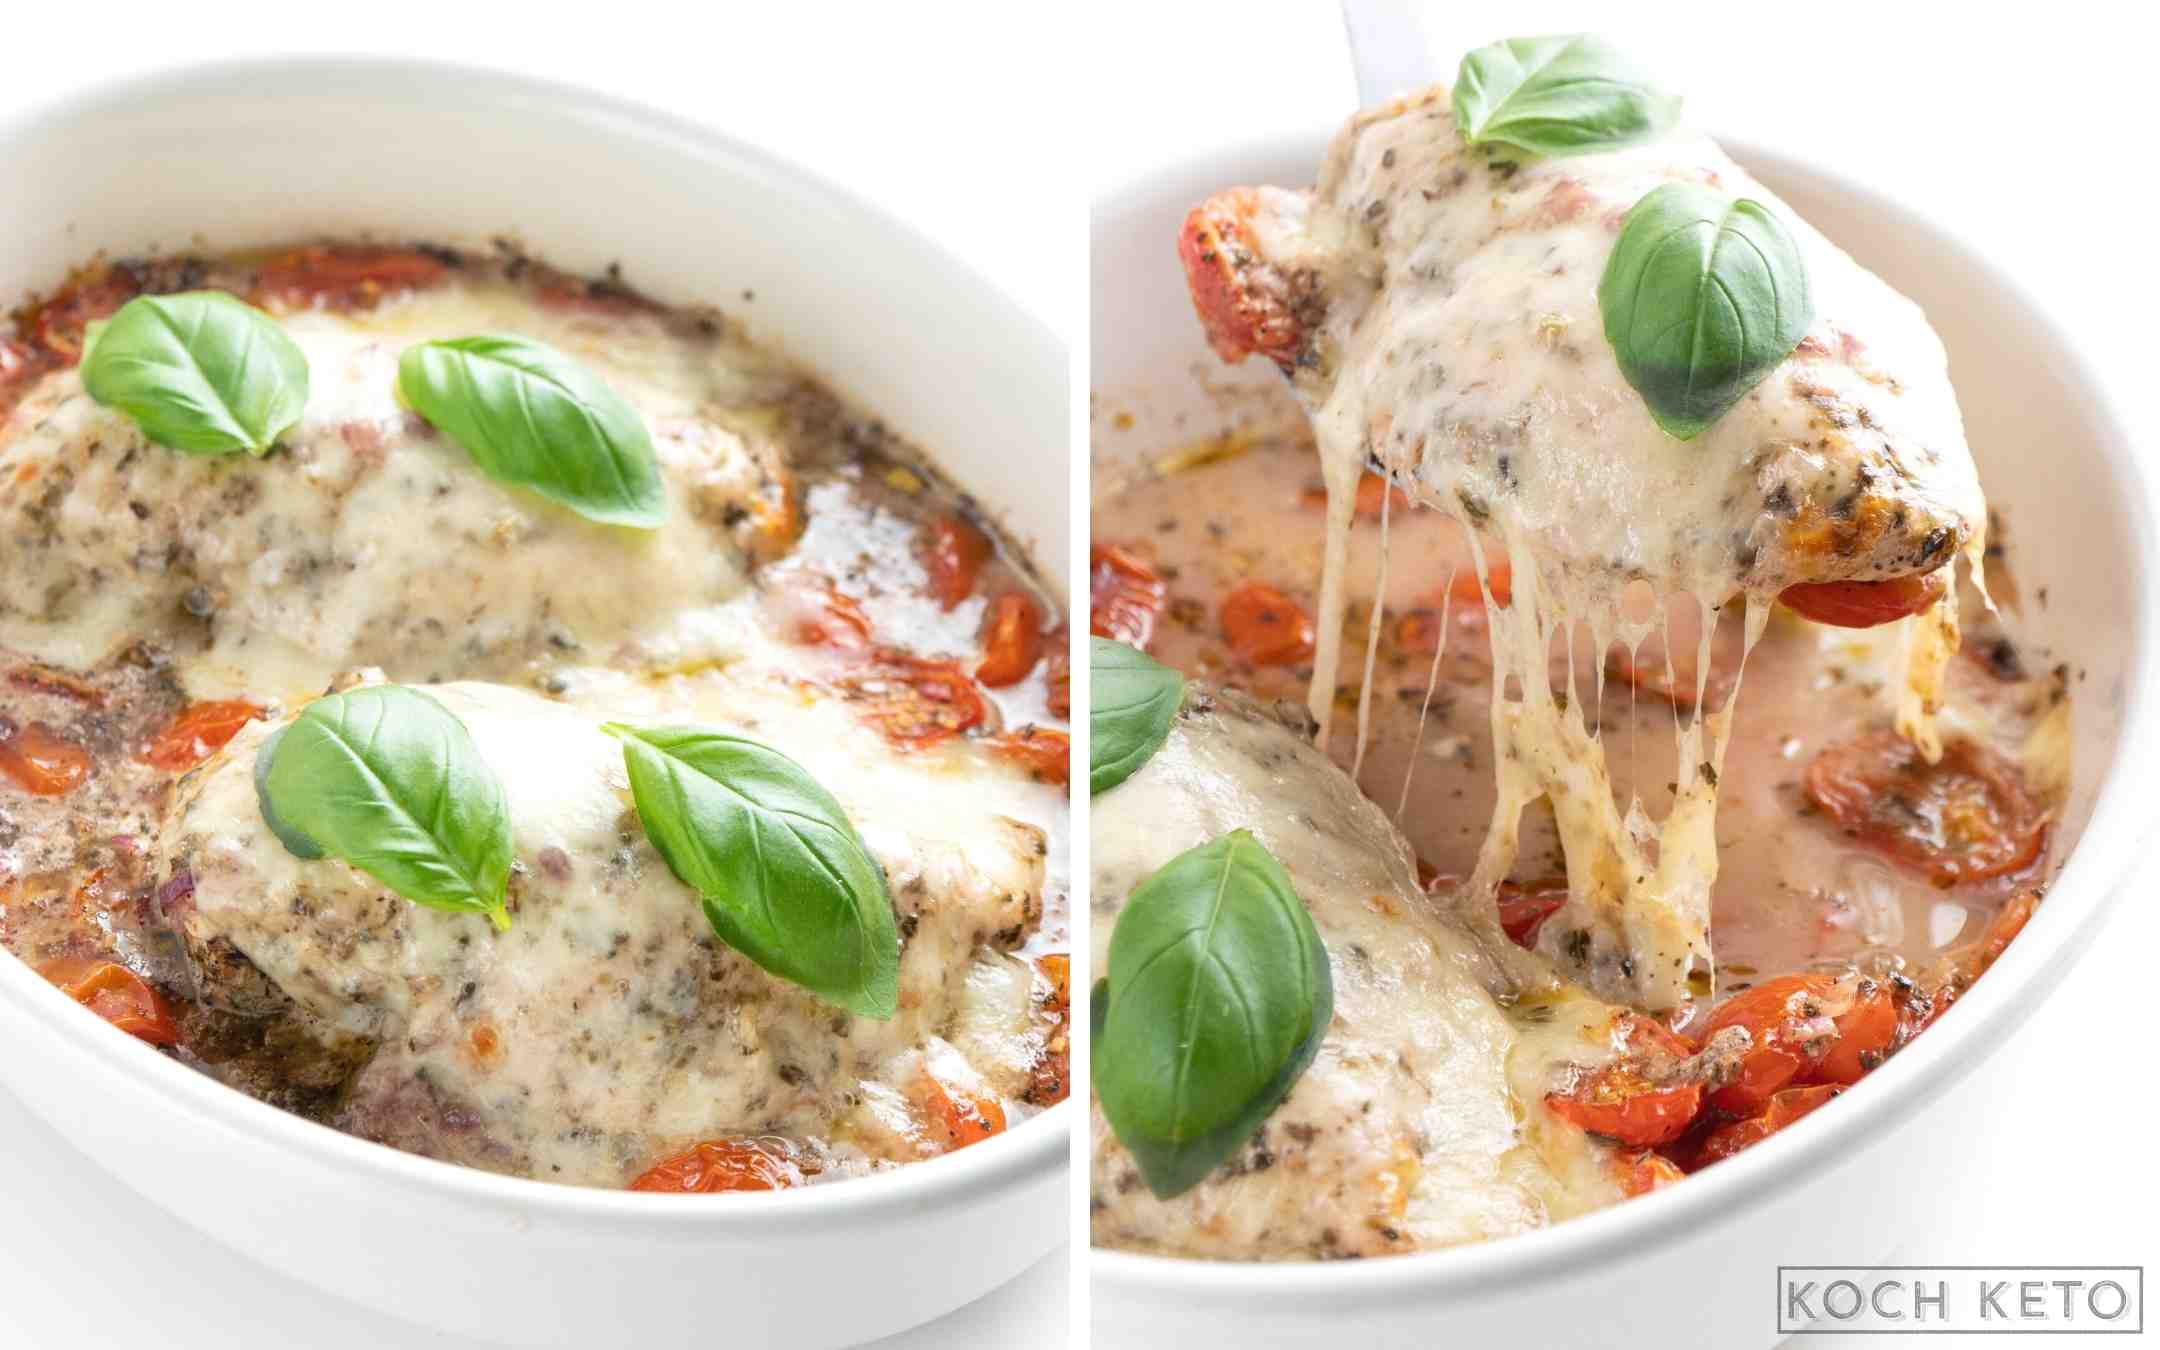 Gebackenes Low Carb Hähnchen Caprese (Tomate-Mozzarella) ohne Kohlenhydrate zum ketogenen Abendessen aus dem Backofen Desktop Image Collage